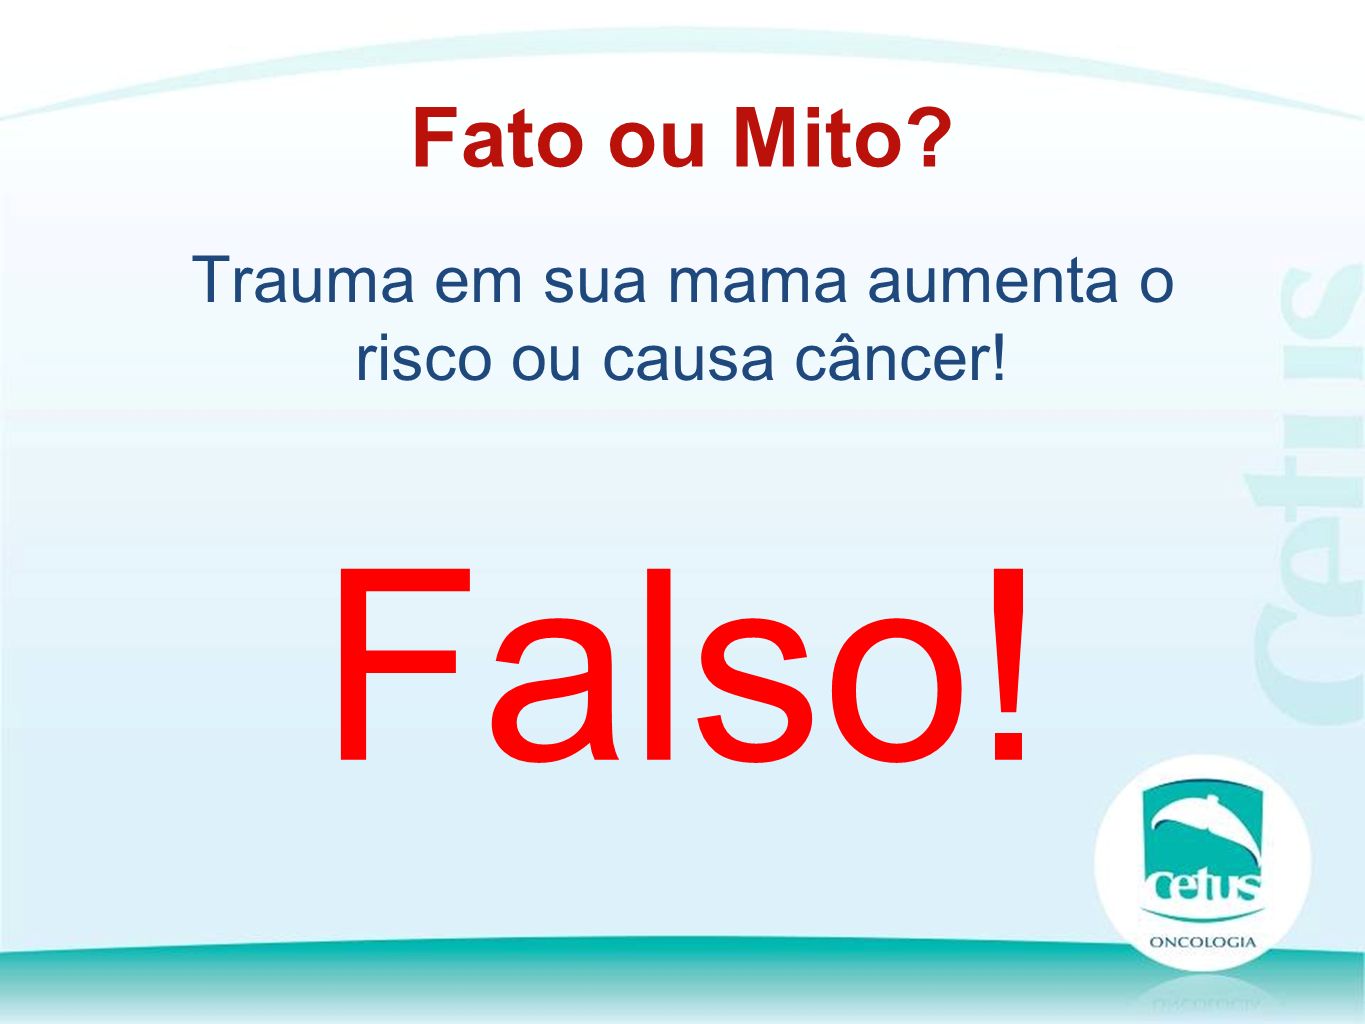 Trauma em sua mama aumenta o risco ou causa câncer! Fato ou Mito Falso!